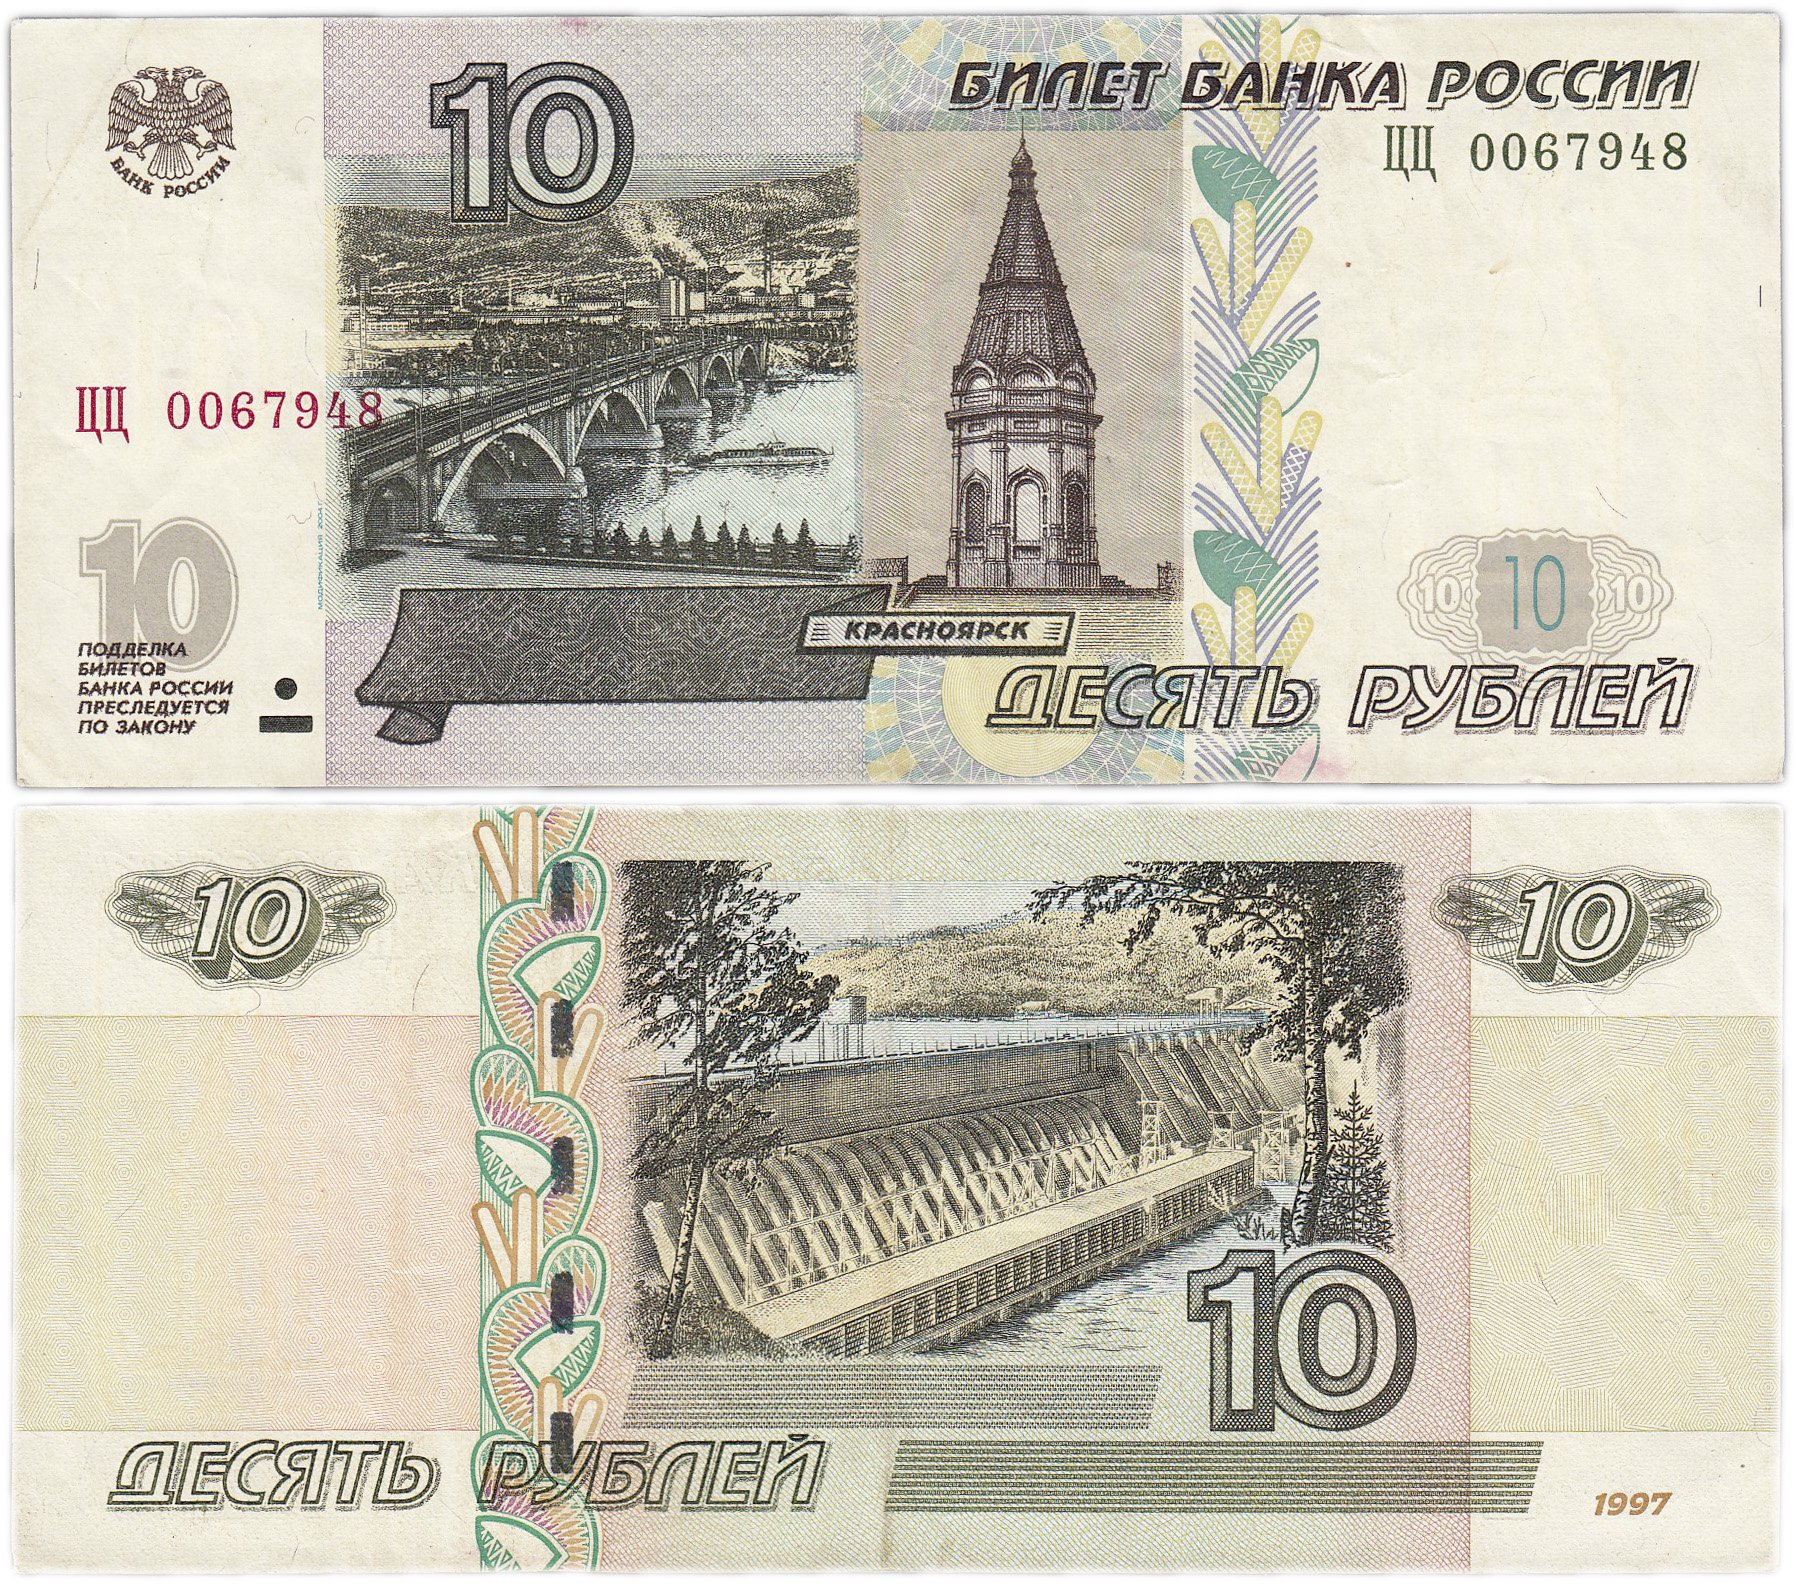 1 цена купюра. 10 Рублей купюра. Купюра 5 руб 1997 года. Десять рублей купюра. Банкнота 5 рублей.